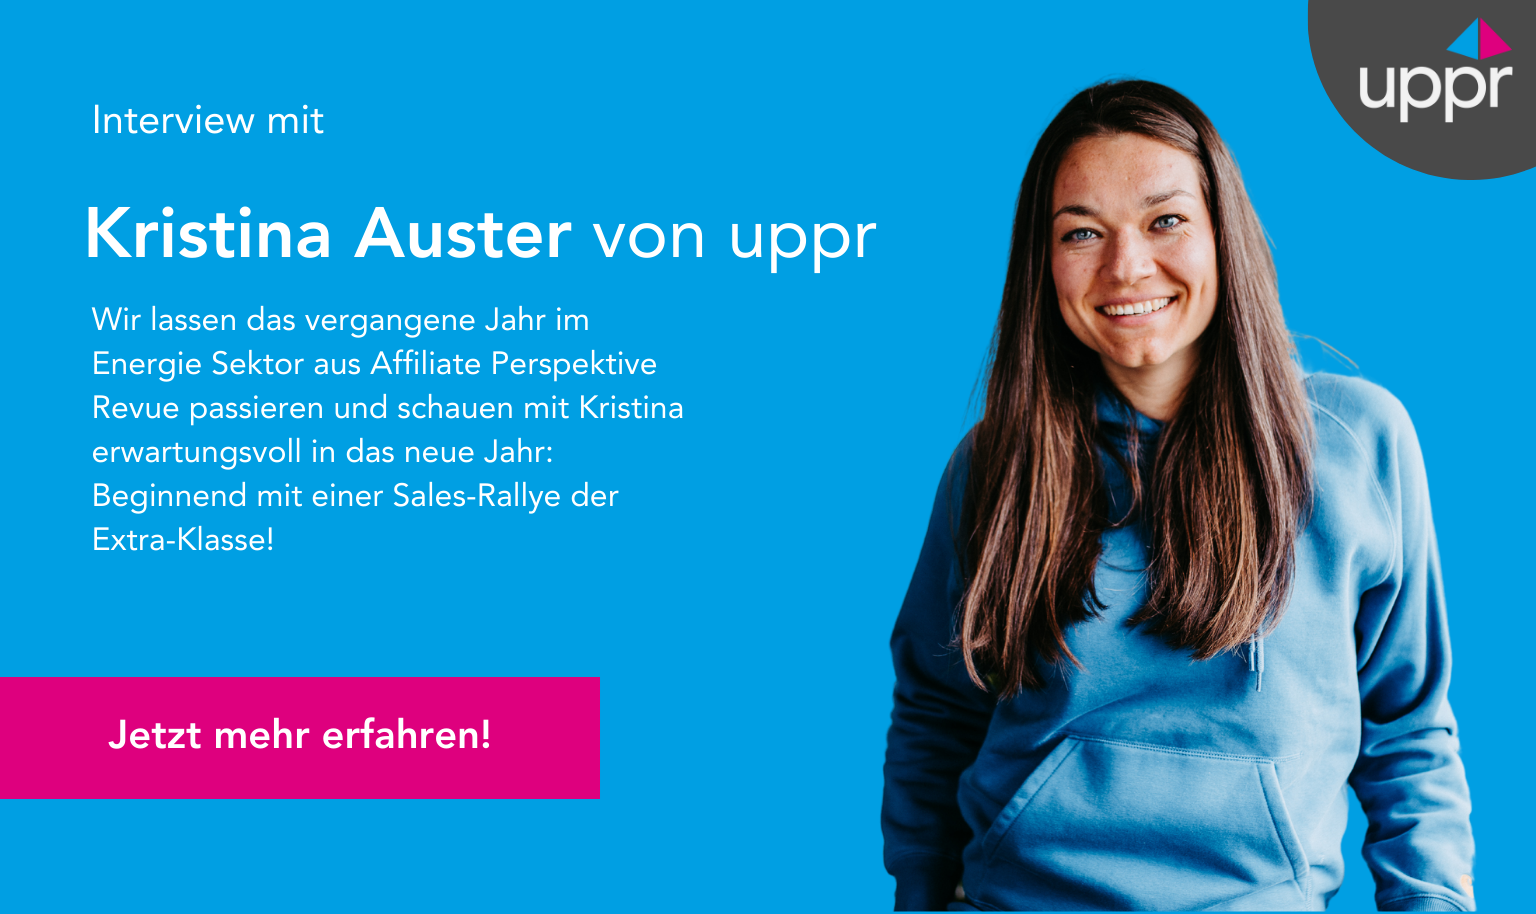 Interview mit Kristina Auster von uppr